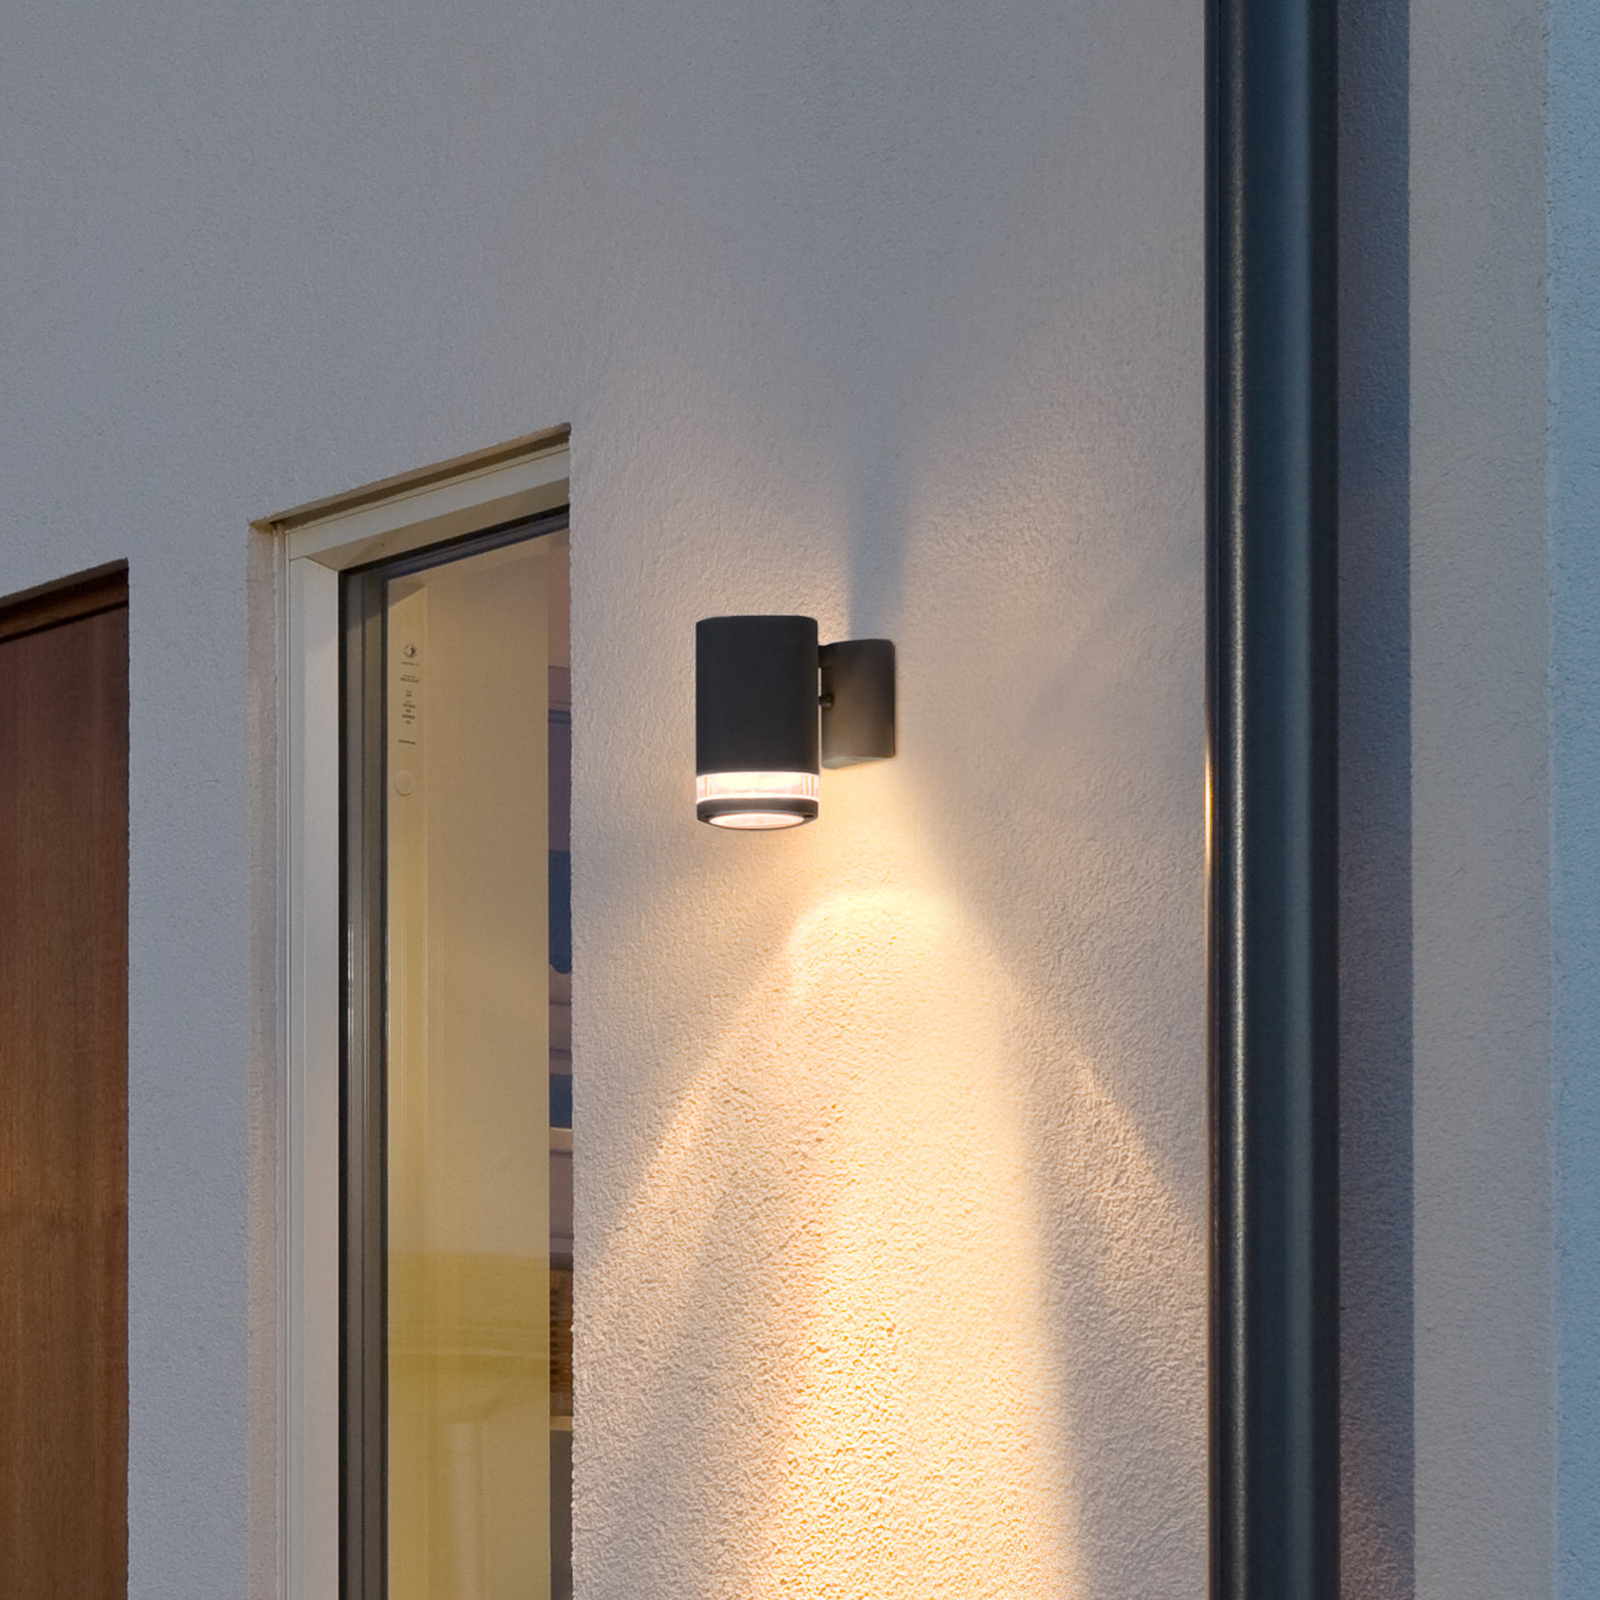 Buitenwandlamp Modena met sleuf, 1-lamps zwart